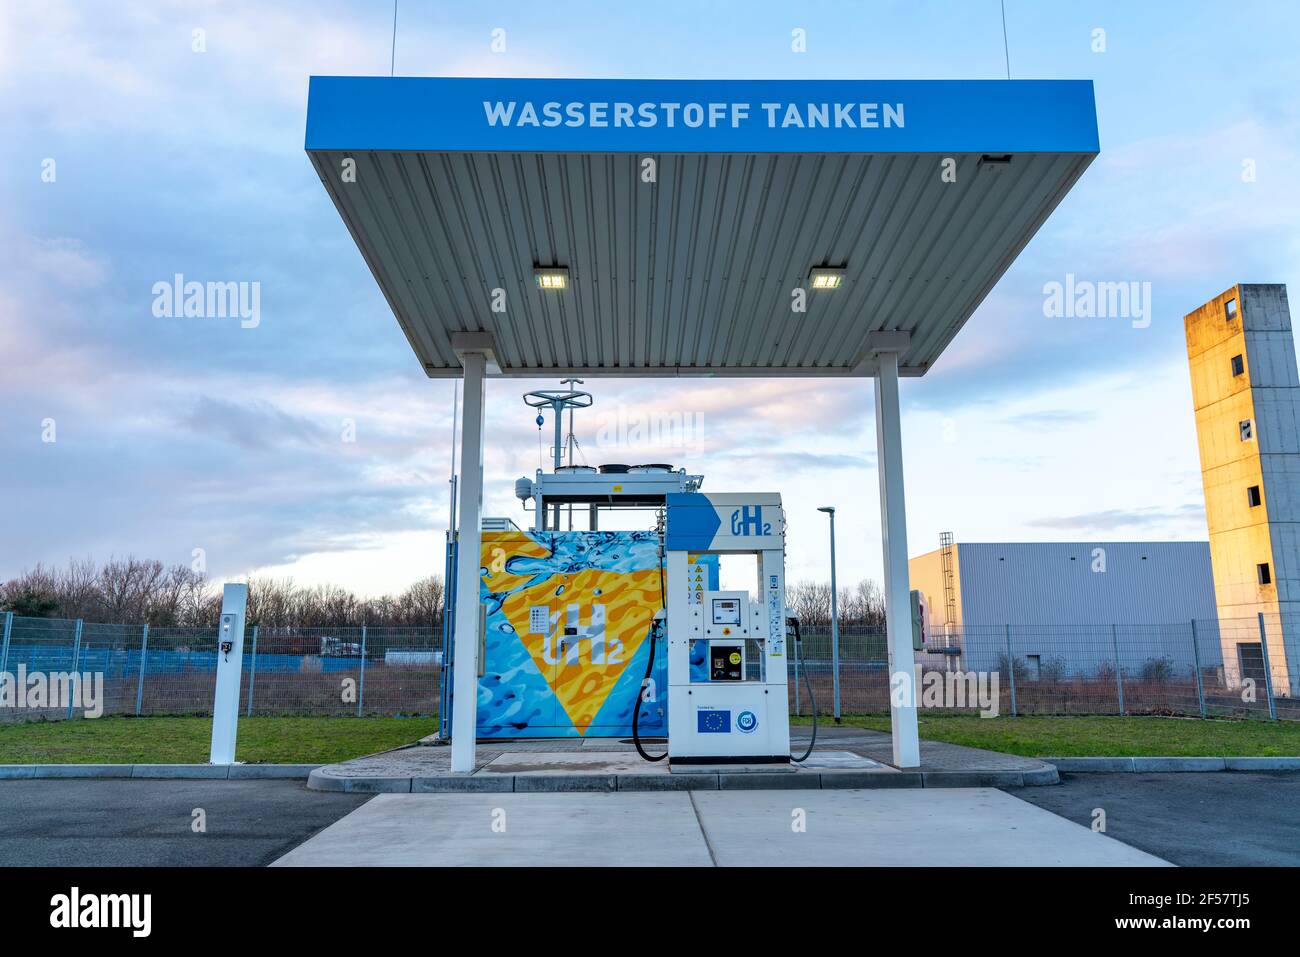 Wasserstofftankstelle im Wasserstoff-Kompetenzzentrum Hertern, H2Herten, auf dem Gelände des stillgefahrenen Kohlebergwerks Ewald in Herten, NRW. Stockfoto